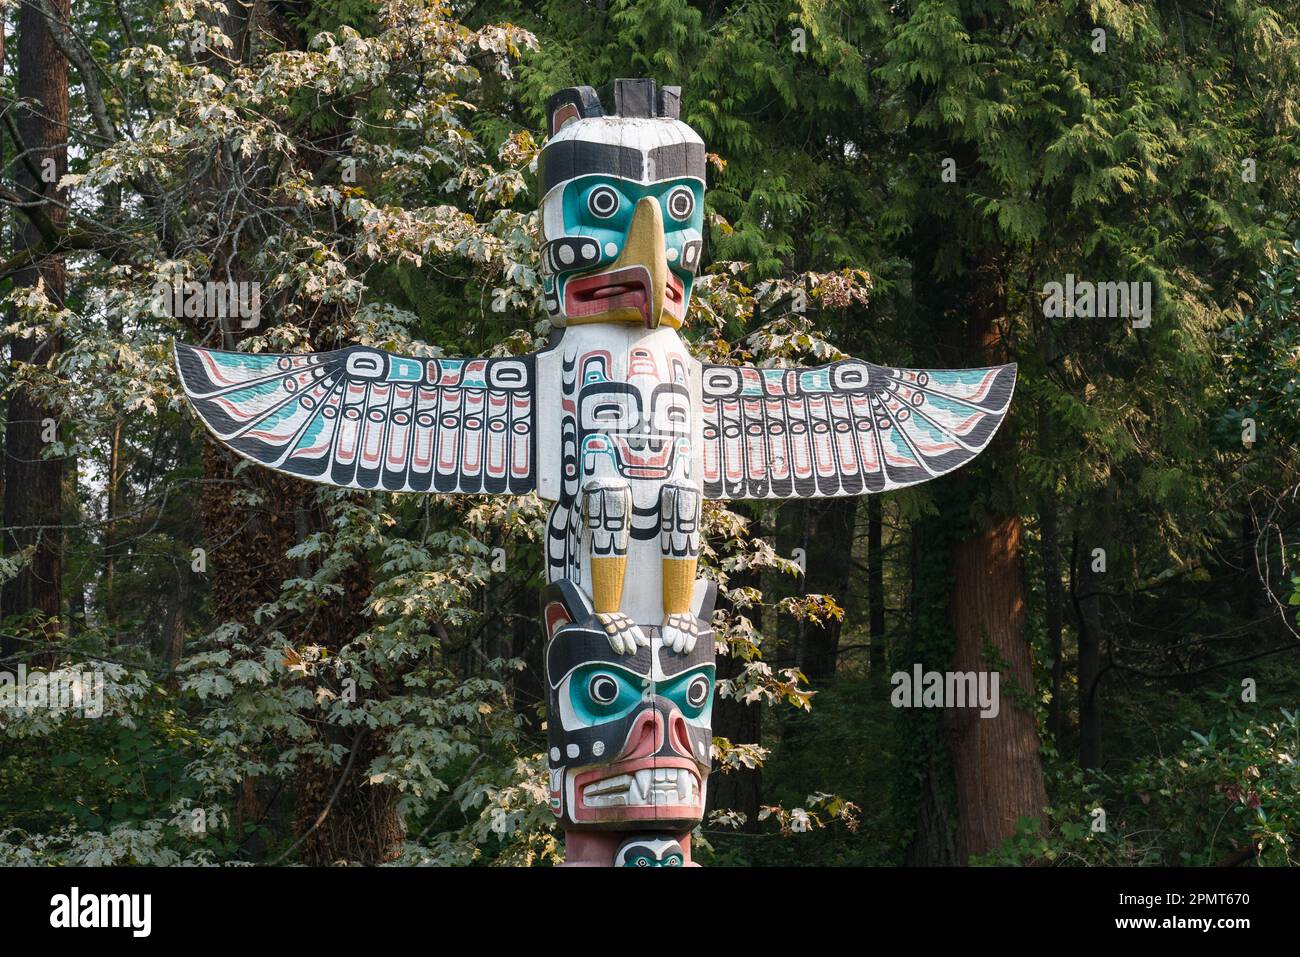 Vancouver, Canada - 11 septembre 2022 : le totem dans le parc Staley est l'un des nombreux totem des Premières nations exposés dans le parc. Banque D'Images